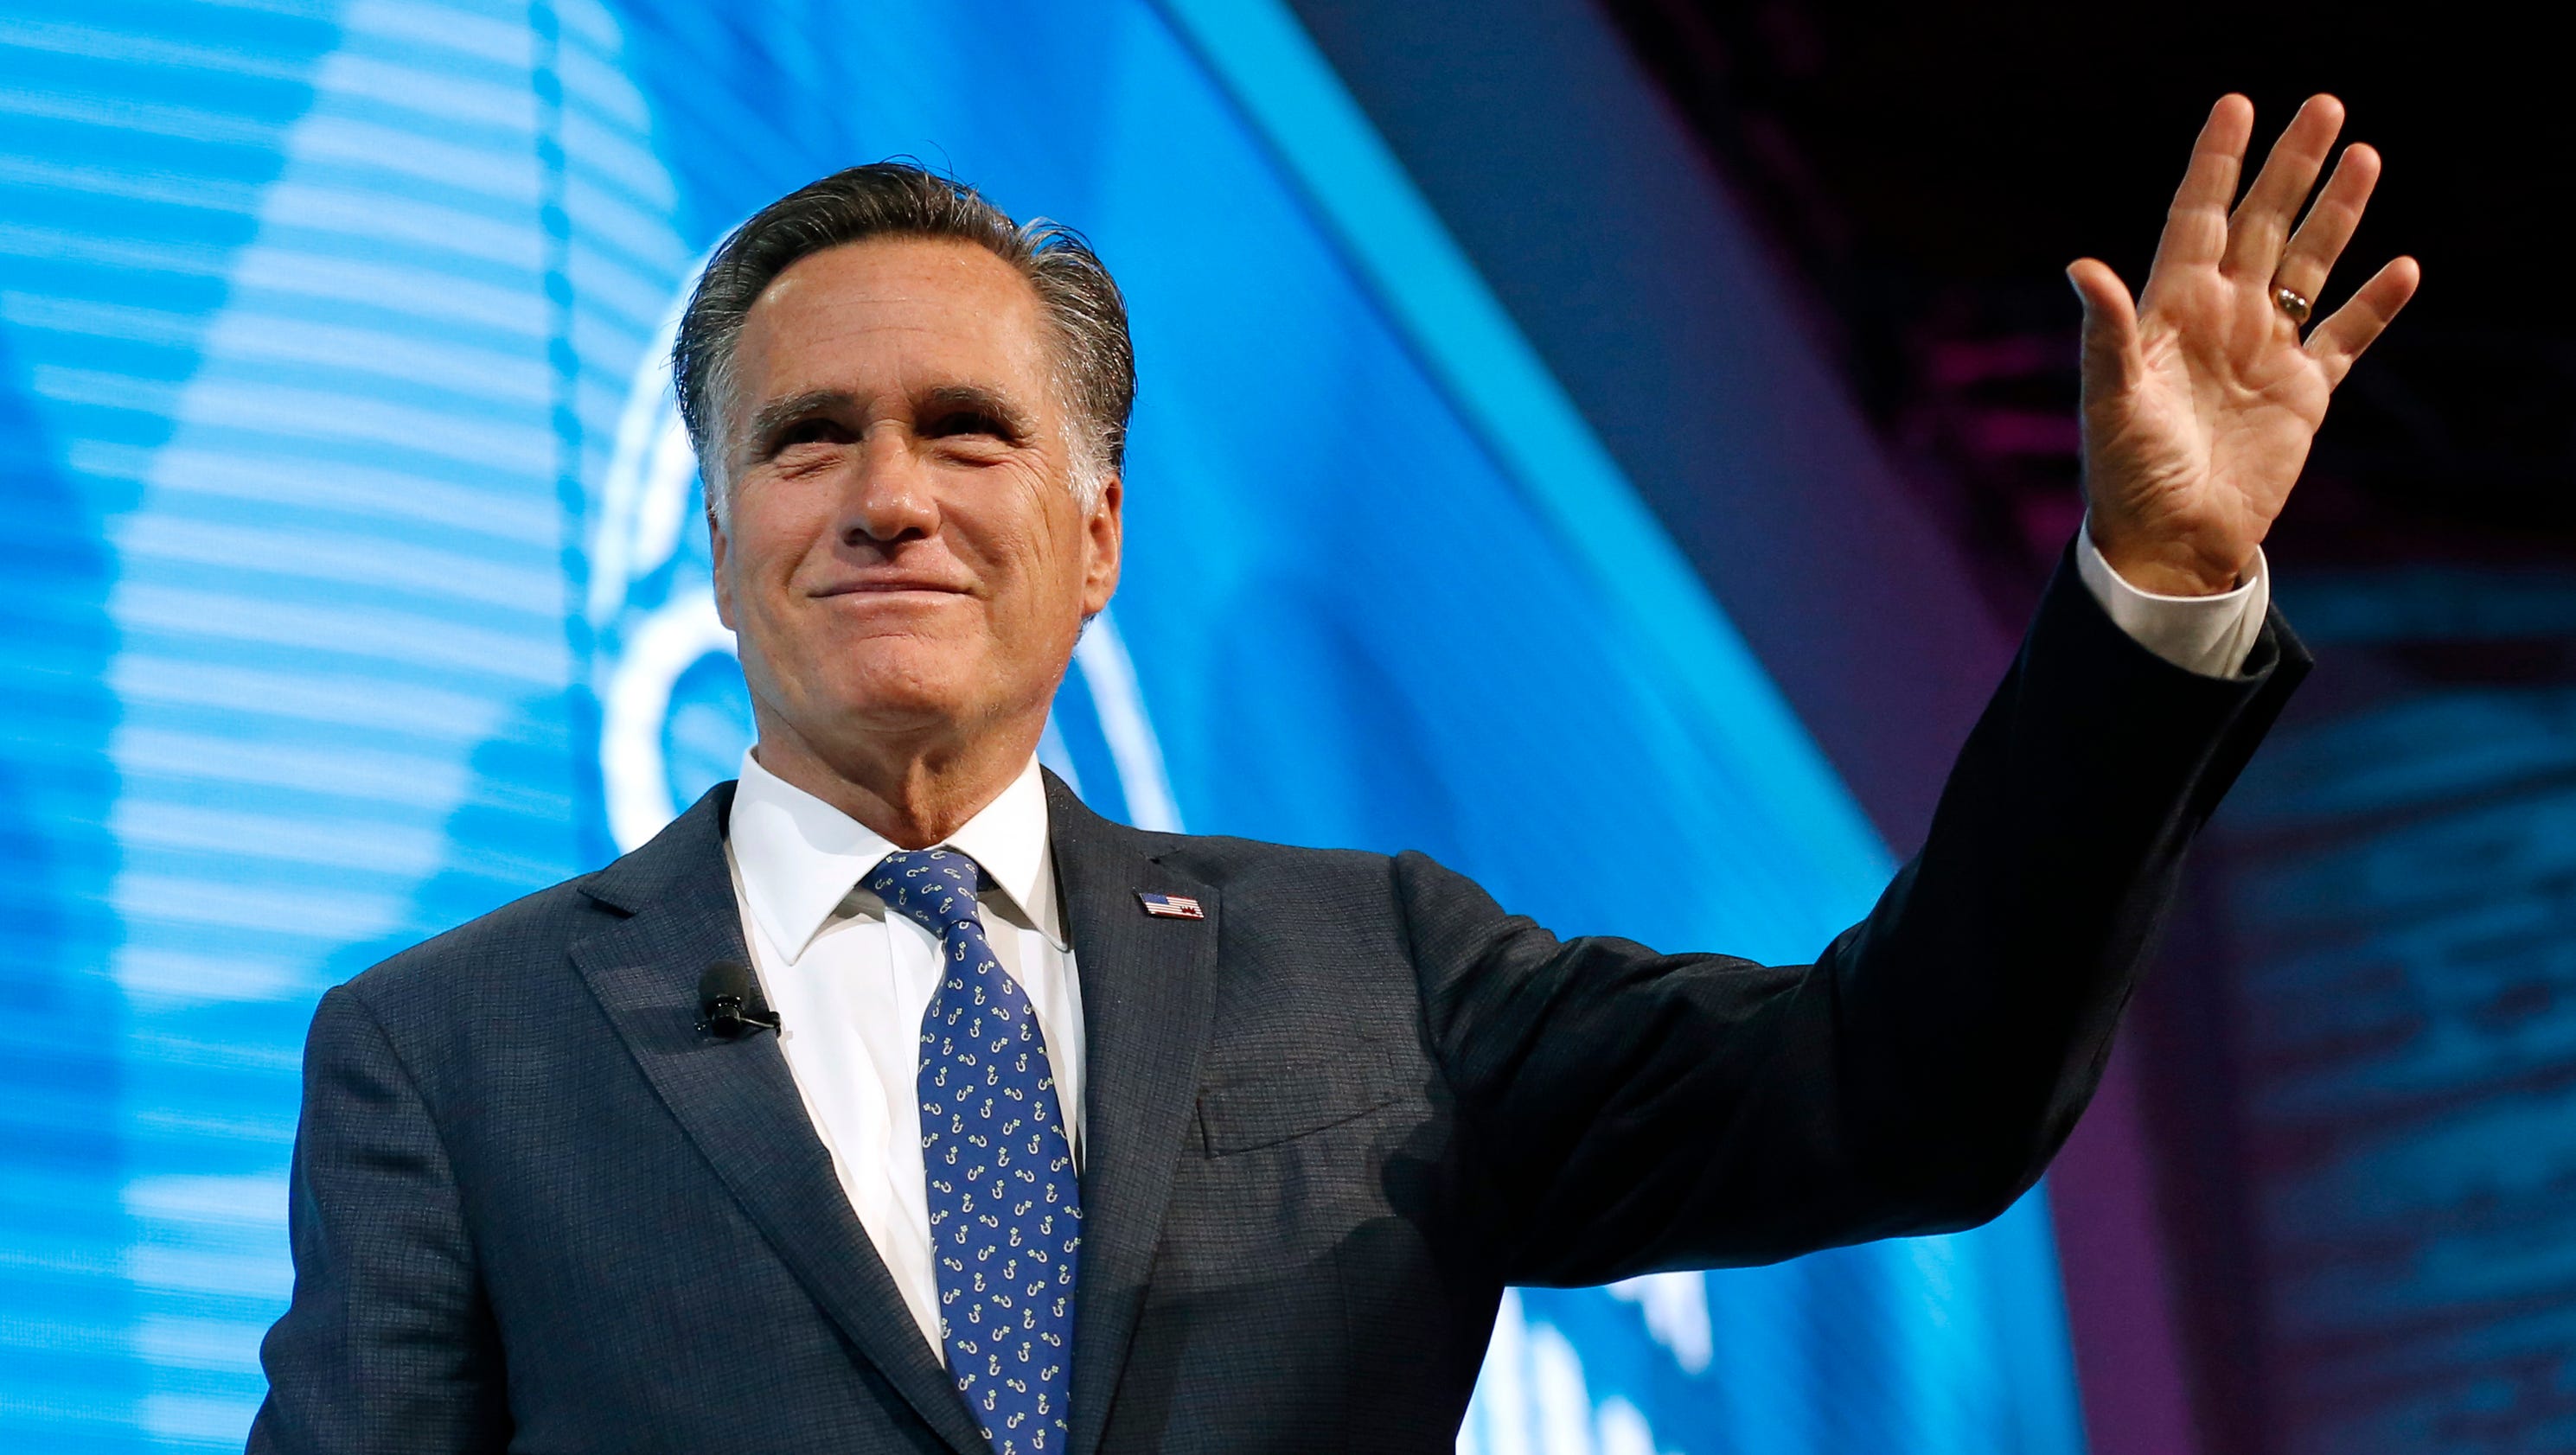 Mitt Romney is running for Senate in Utah